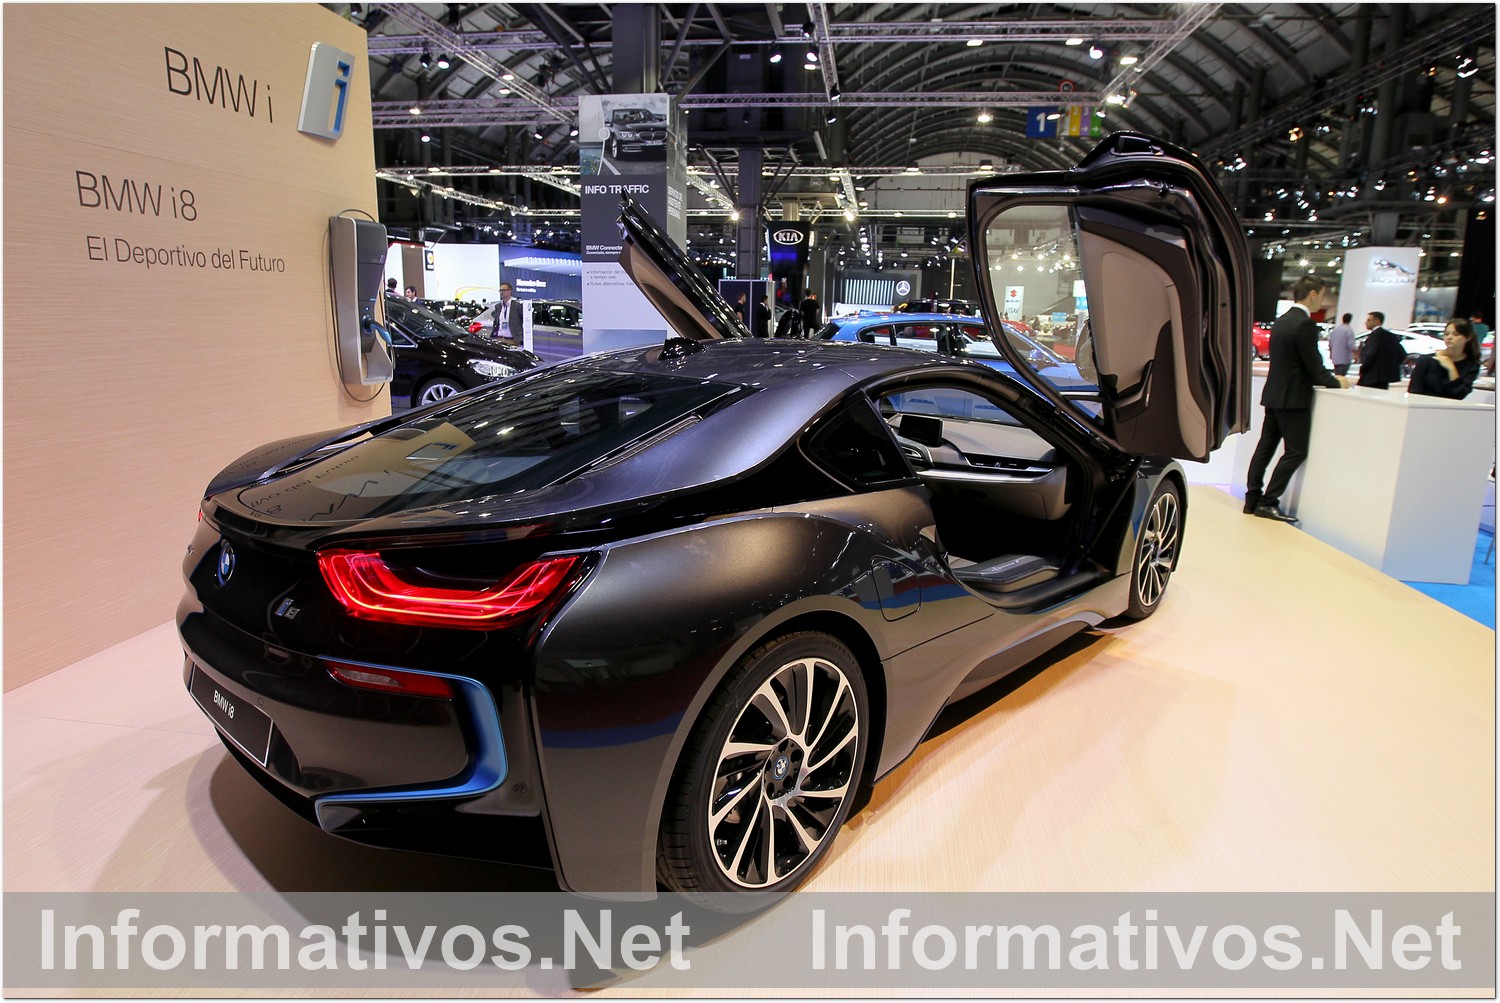 BCN8MAY015.- Inauguración del Salón del Automóvil de Barcelona. BMW i8 uno de los más buscados por los visitantes del salón.